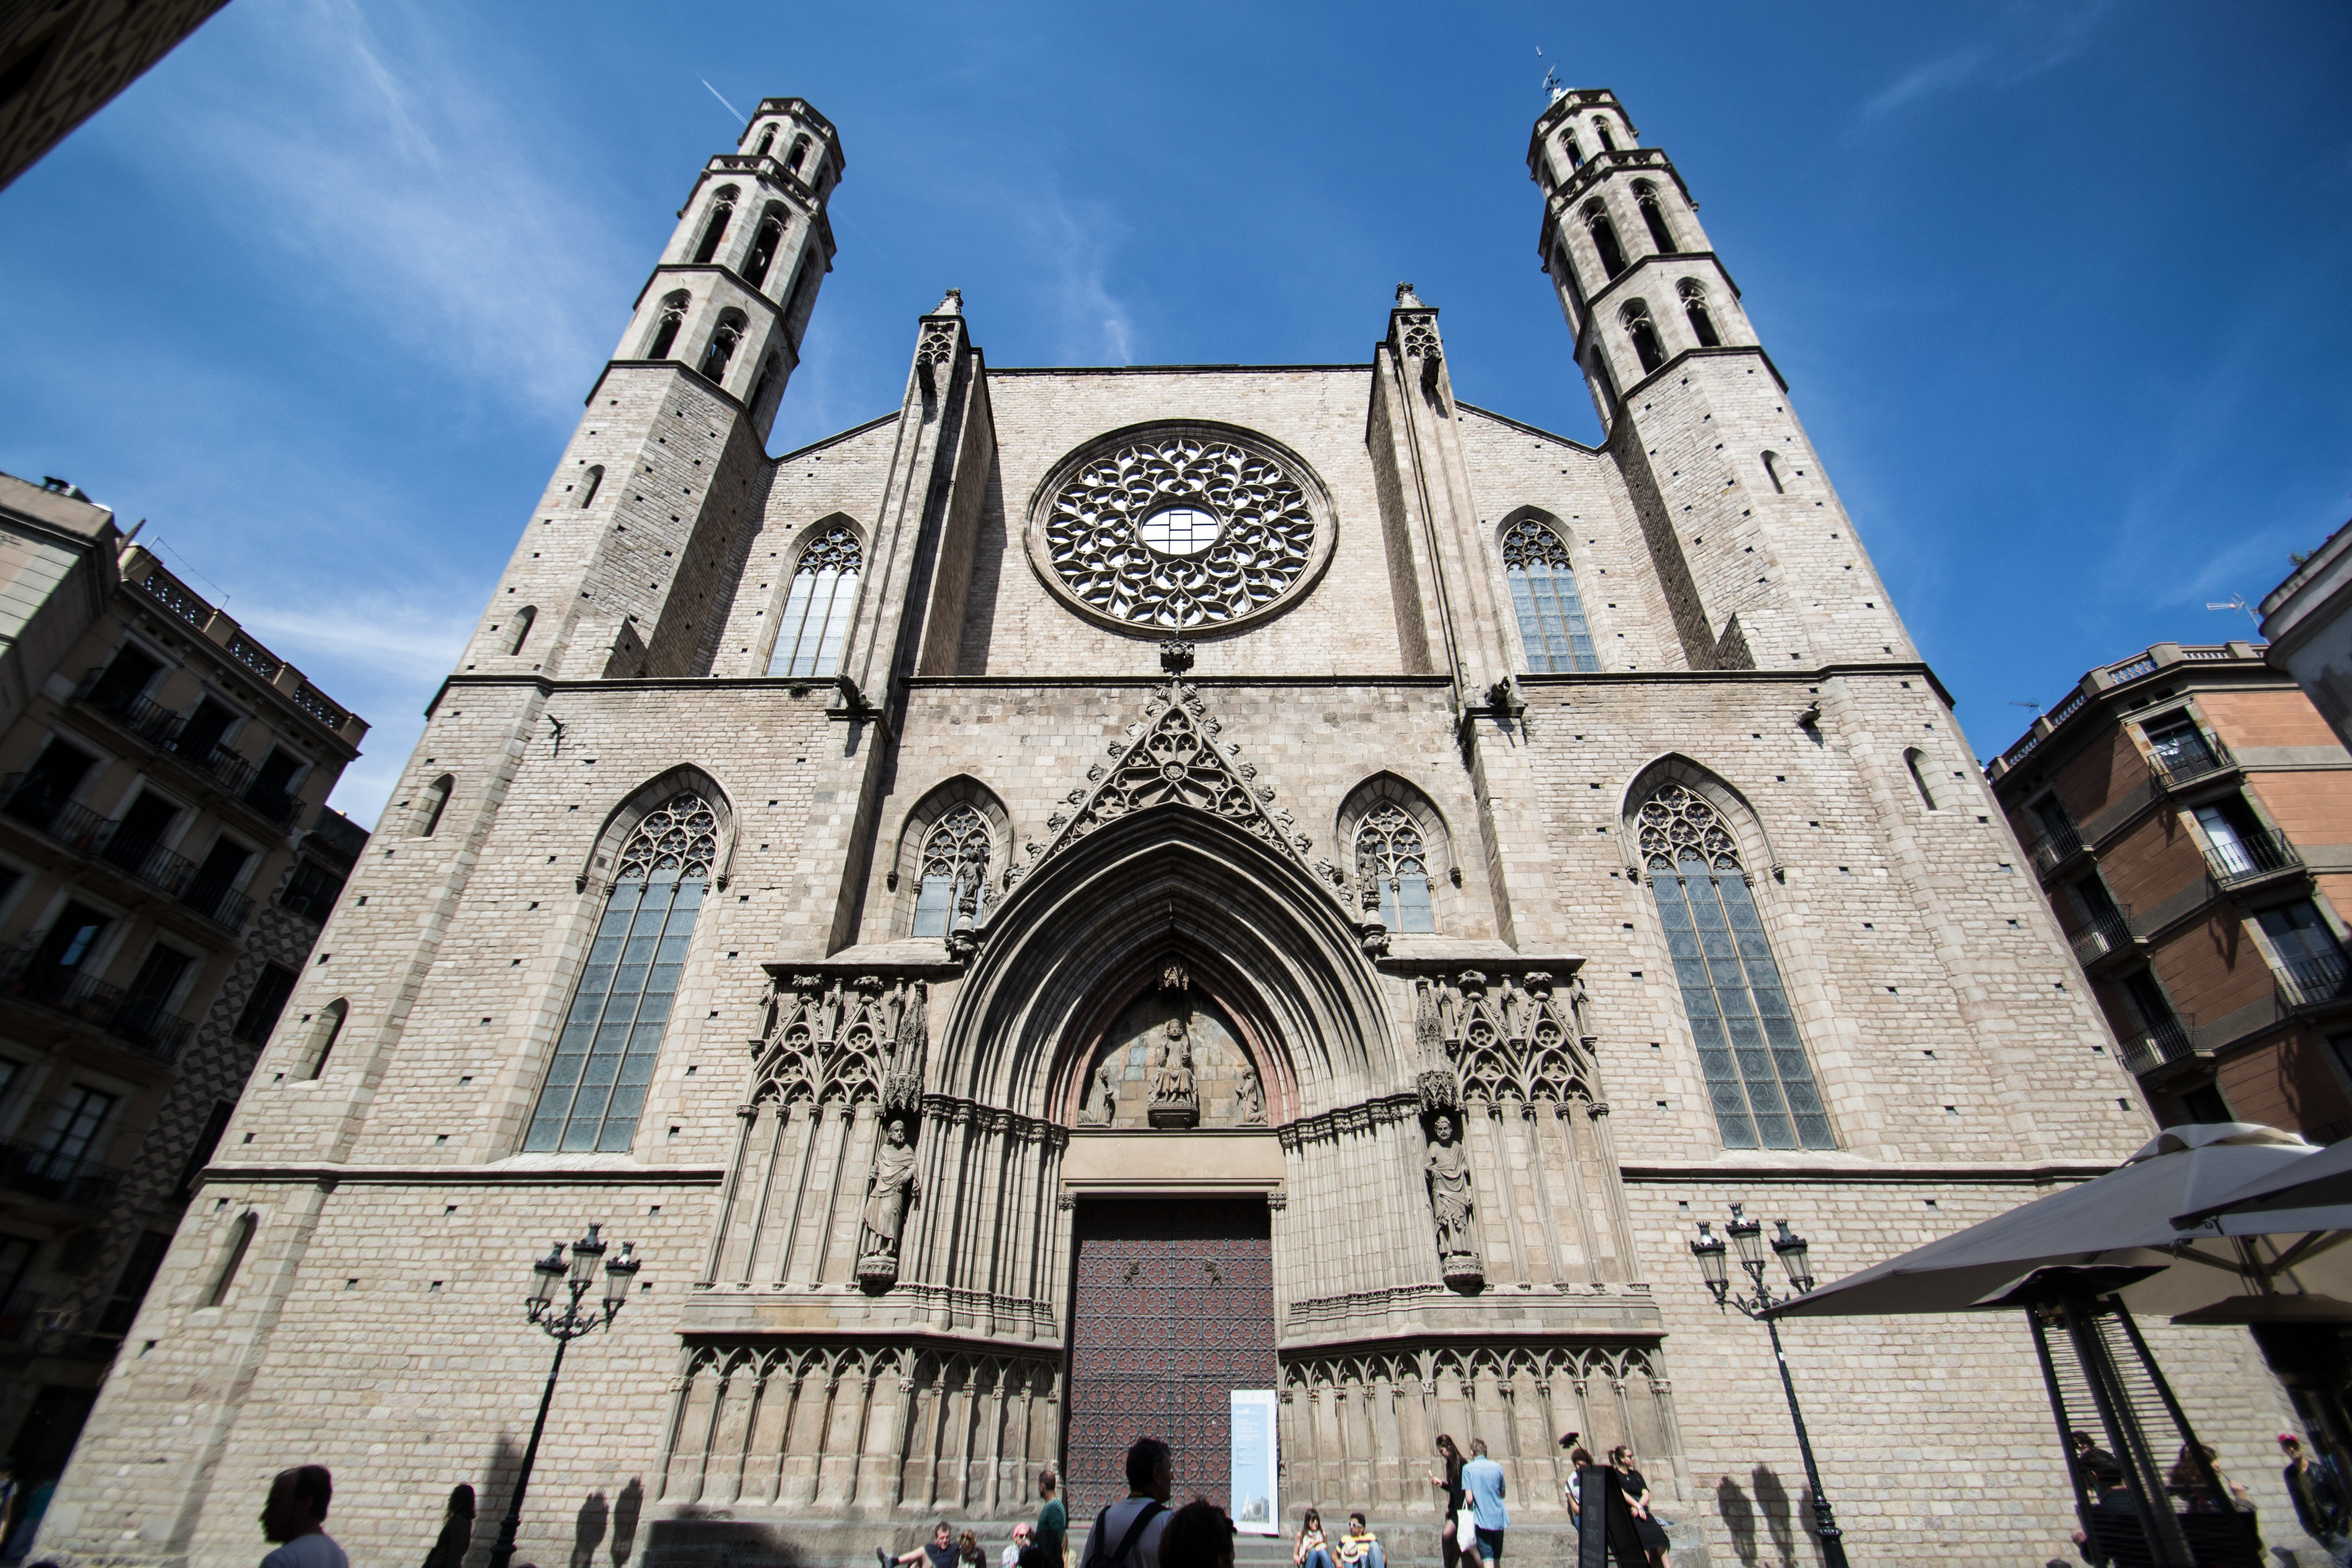 De santa maria. Церковь Святой Марии Барселона.